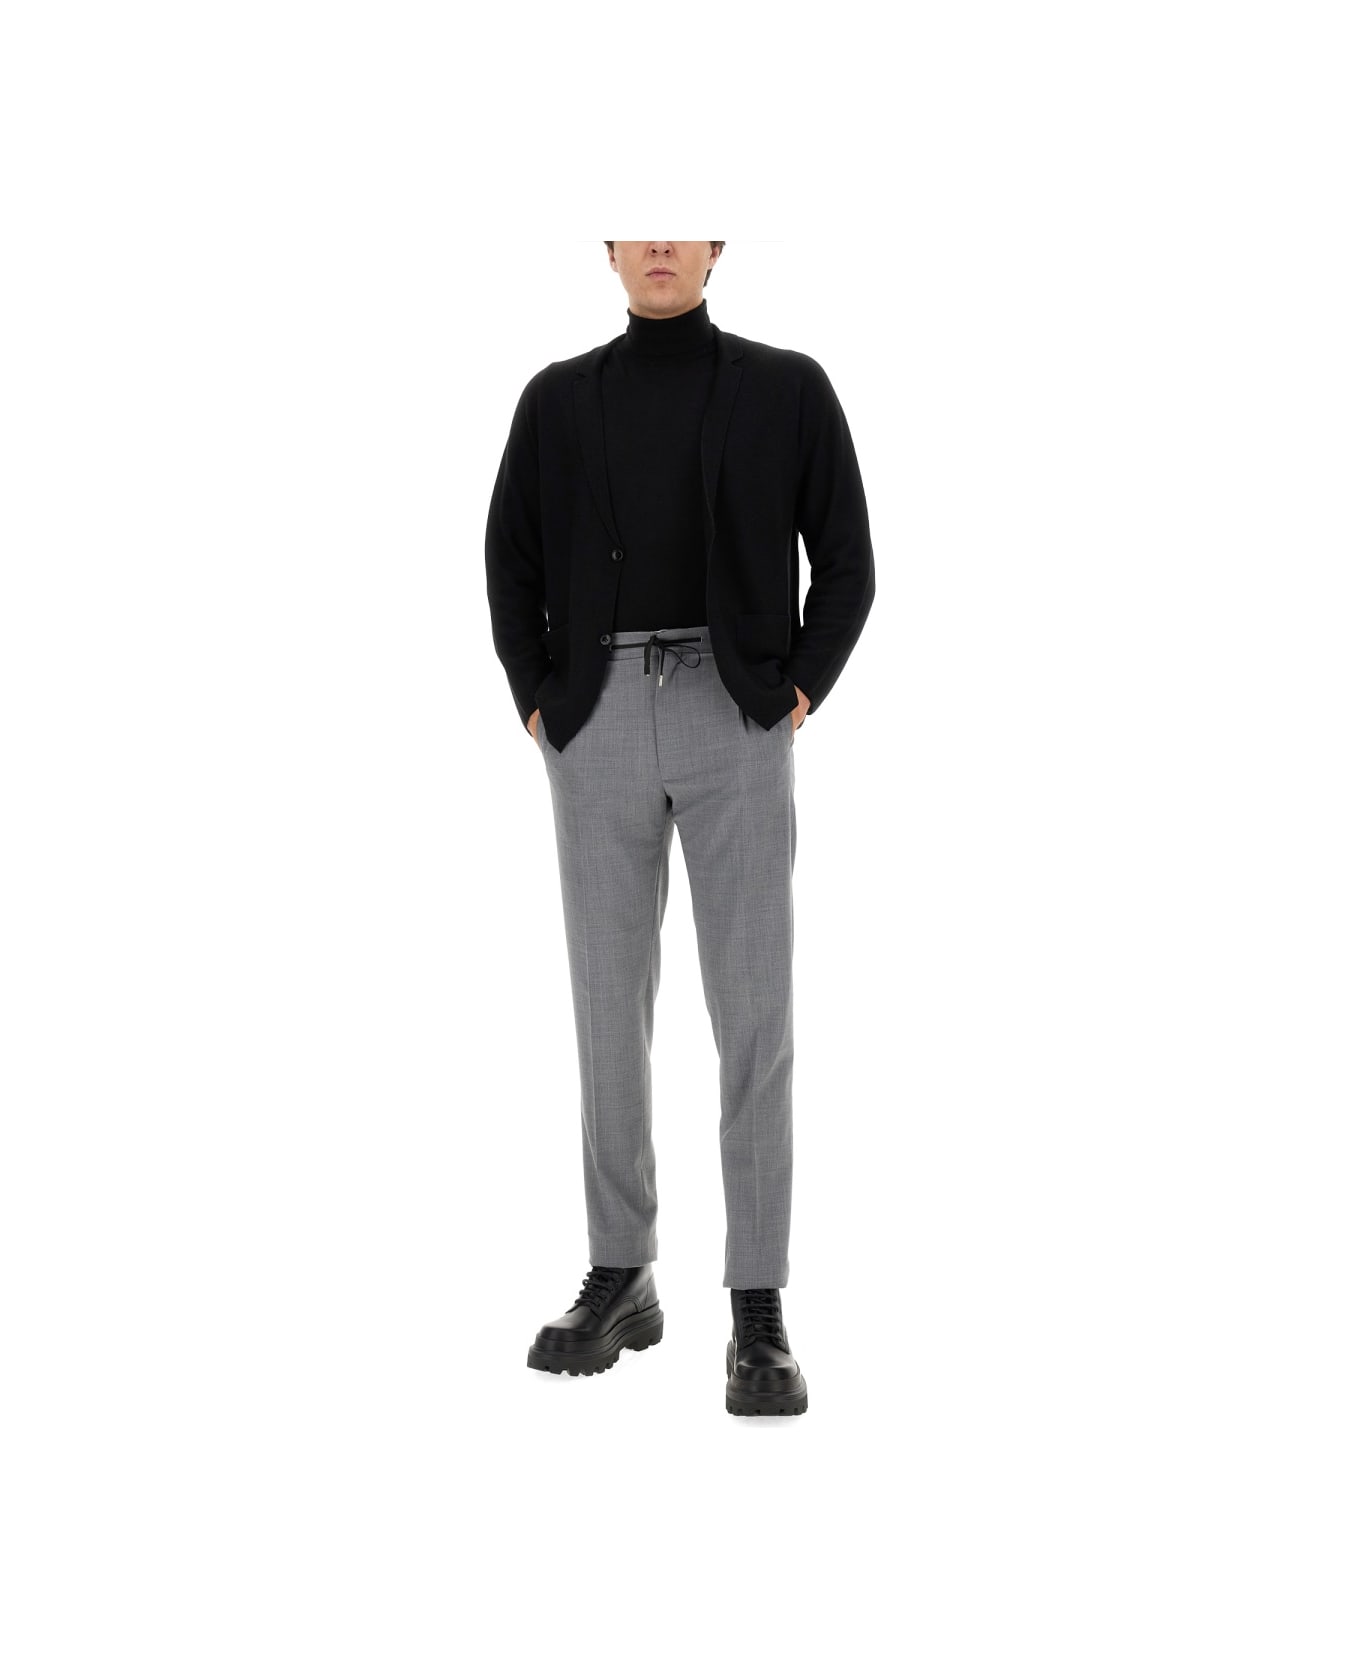 Lardini Knitted Jacket - Black ニットウェア